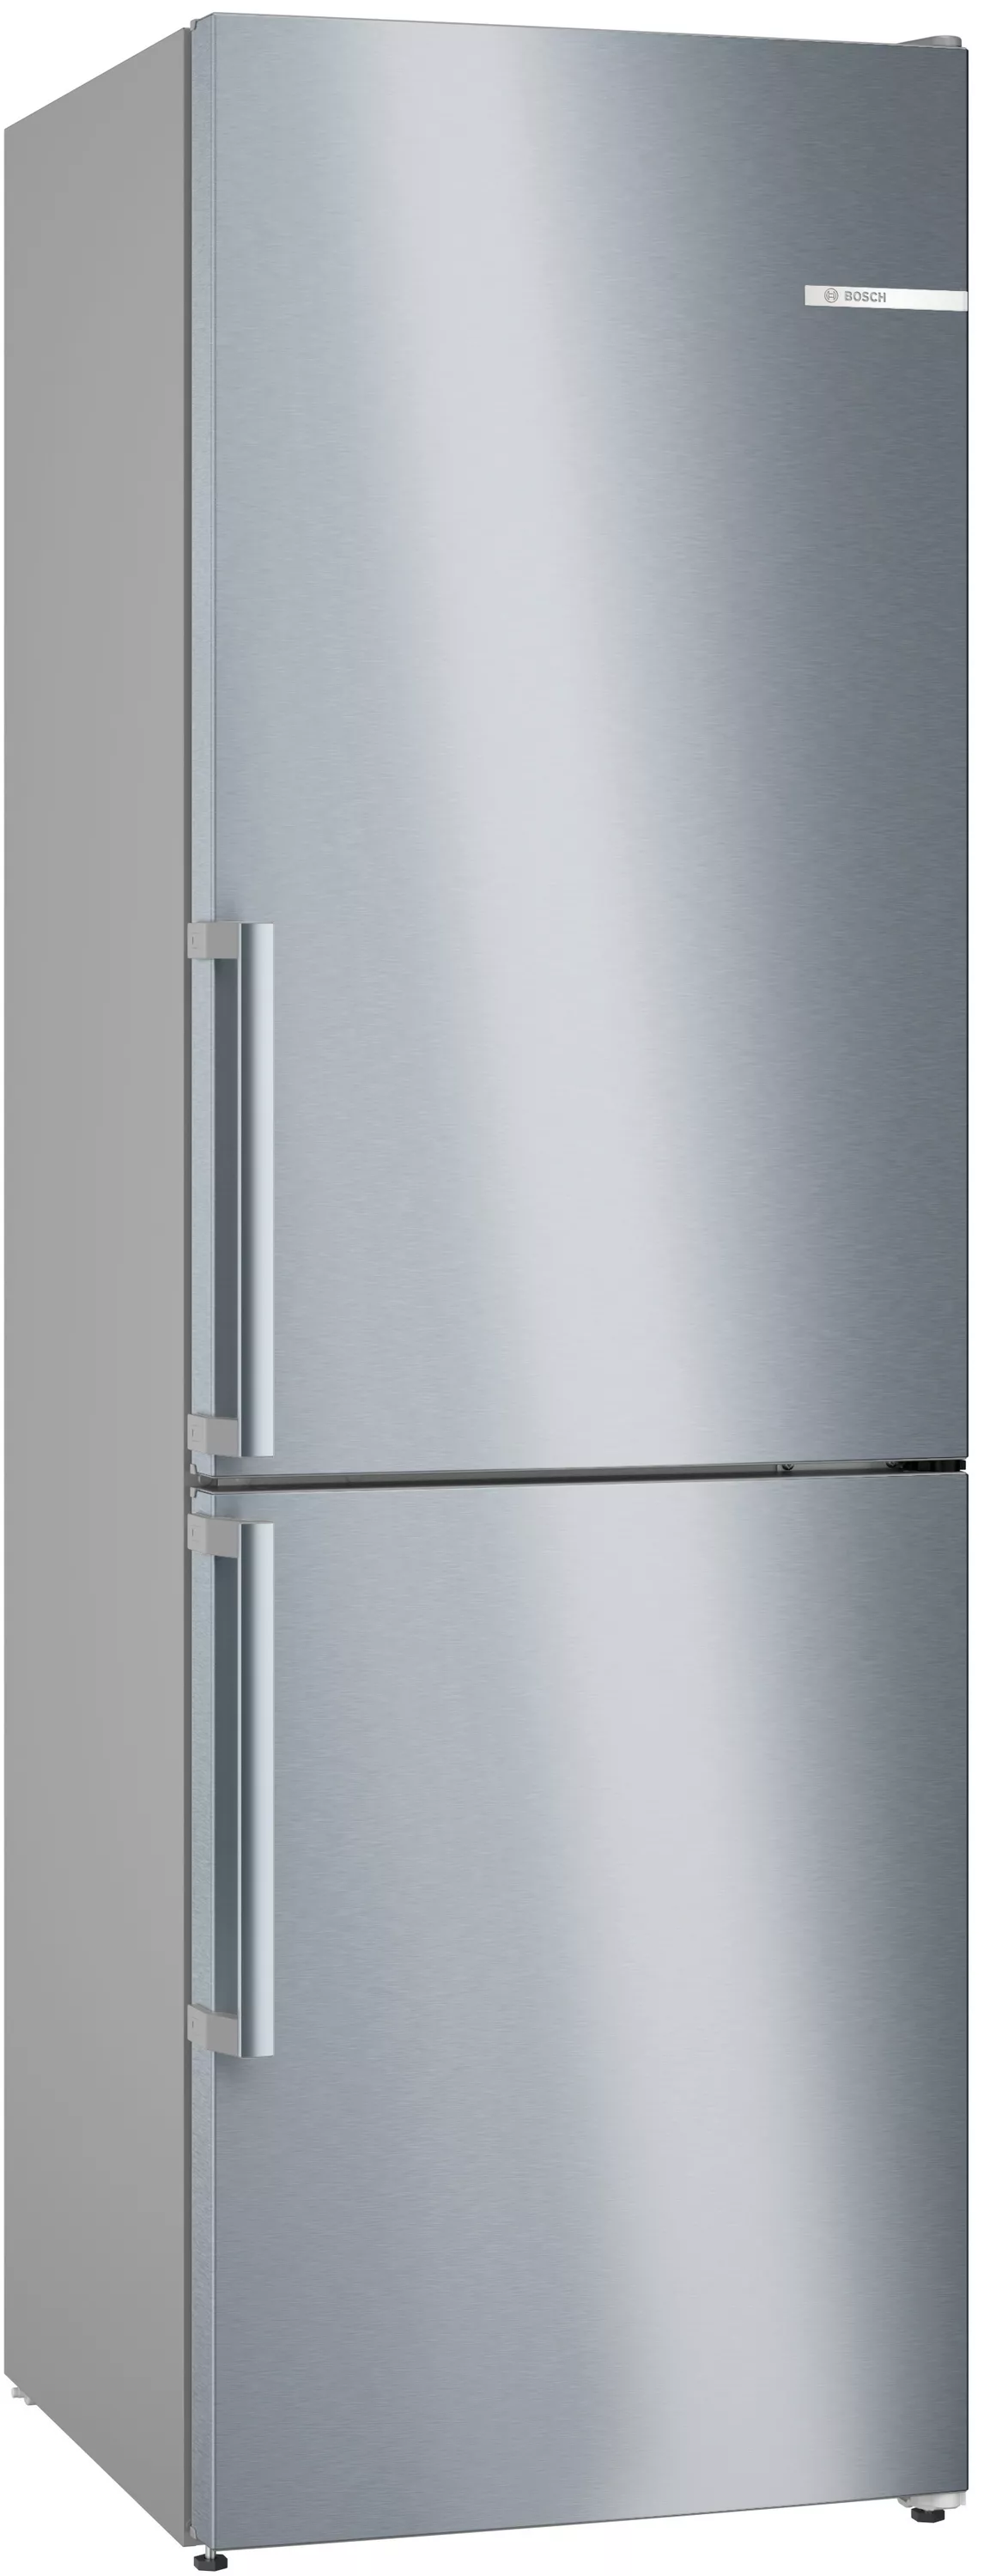 Bosch Serie 4, Freistehende Kühl-Gefrier-Kombination mit Gefrierbereich  unten, 186 x 60 cm, Edelstahl (mit Antifingerprint), KGN36VICT |  4242005281541